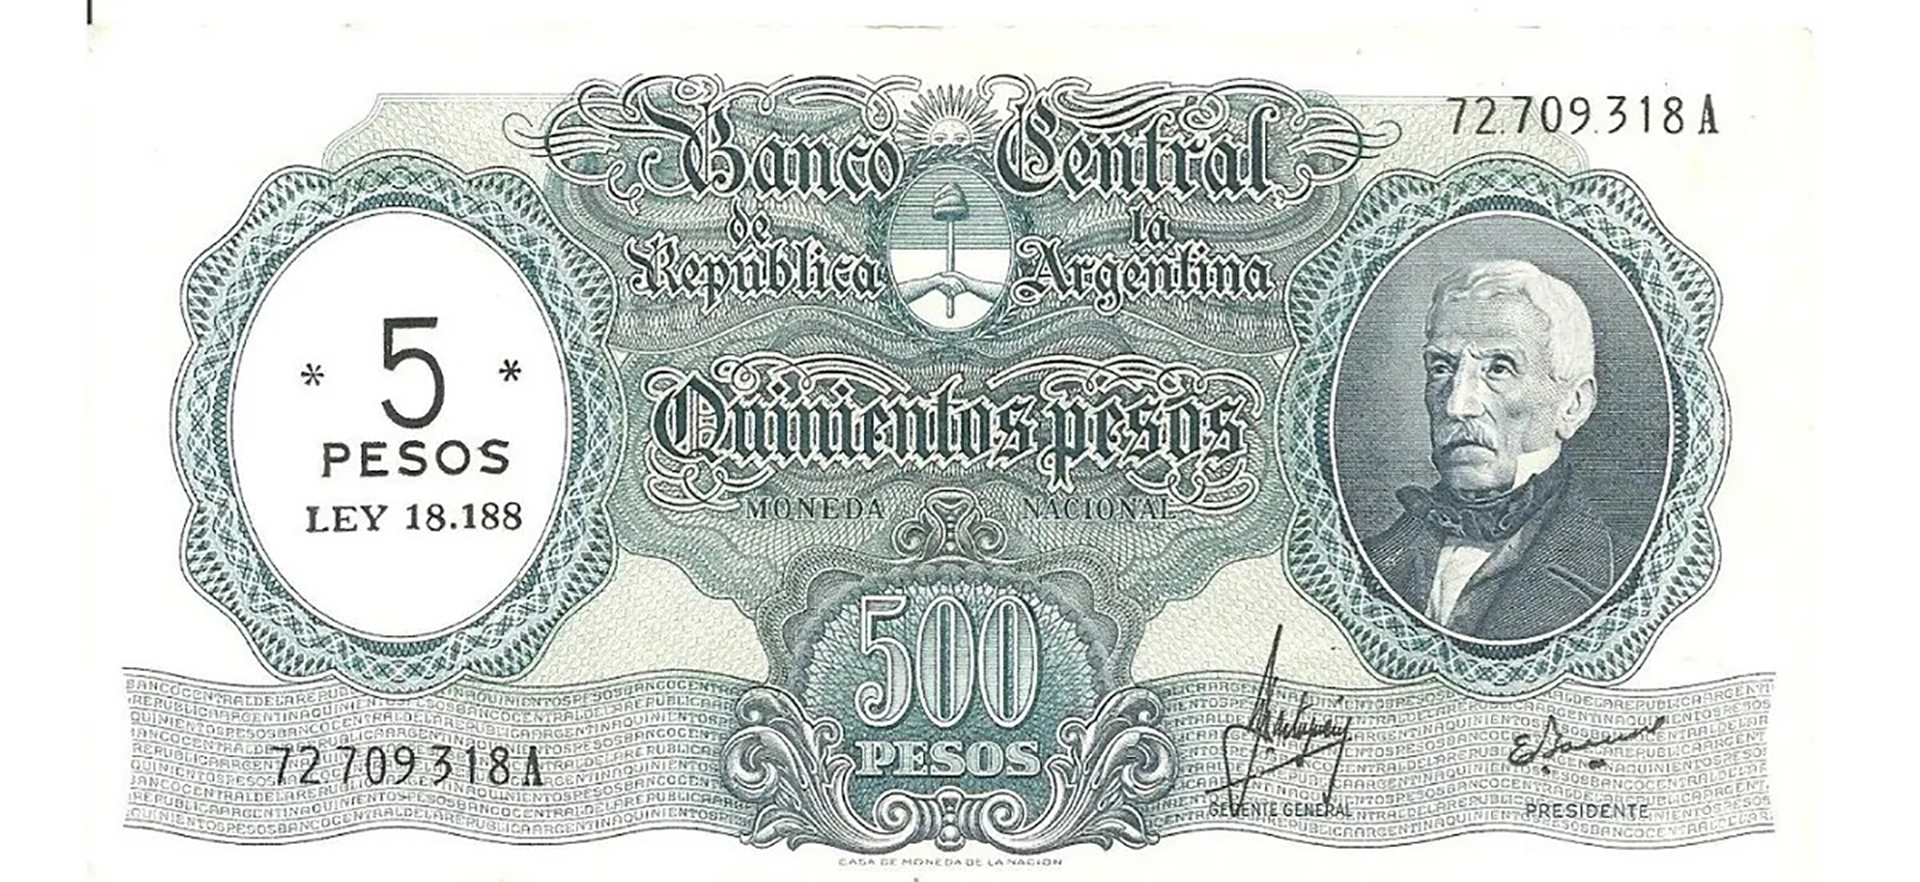 En respuesta a la devaluación de la moneda durante la dictadura militar de 1966 a 1969, el 15 de abril de ese último año se decreta el primer cambio del signo monetario por el Peso Ley 18.188